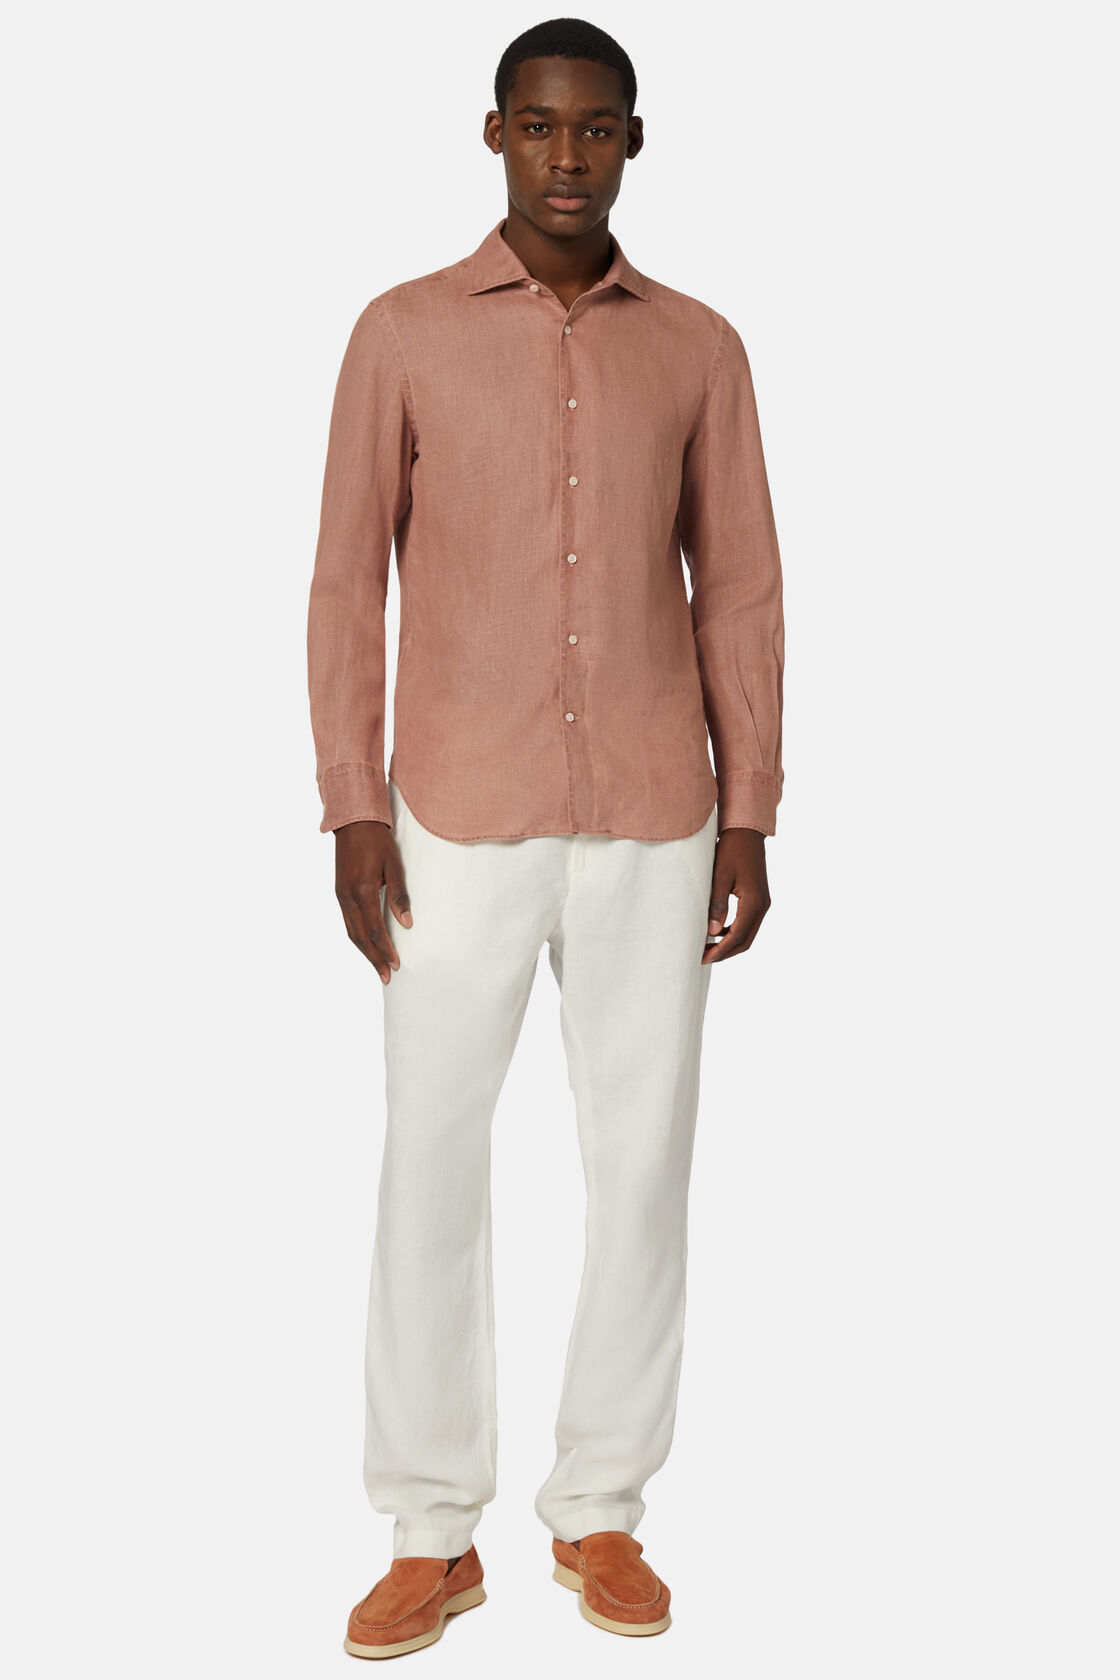 Λινό πουκάμισο με κανονική εφαρμογή, σε κεραμιδί χρώμα, Rot, hi-res